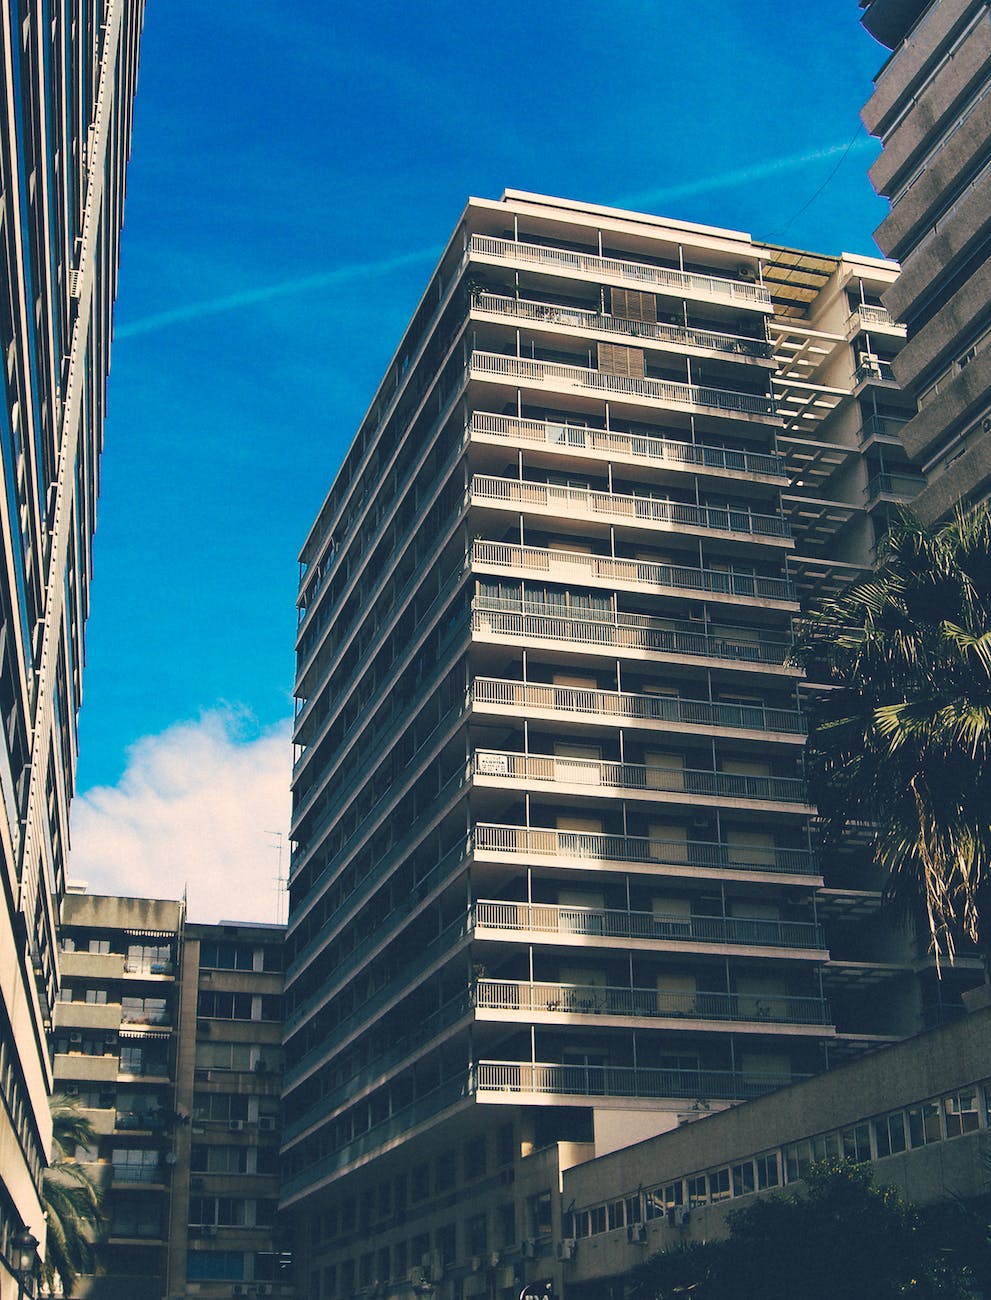 apartment buildings under blue sky